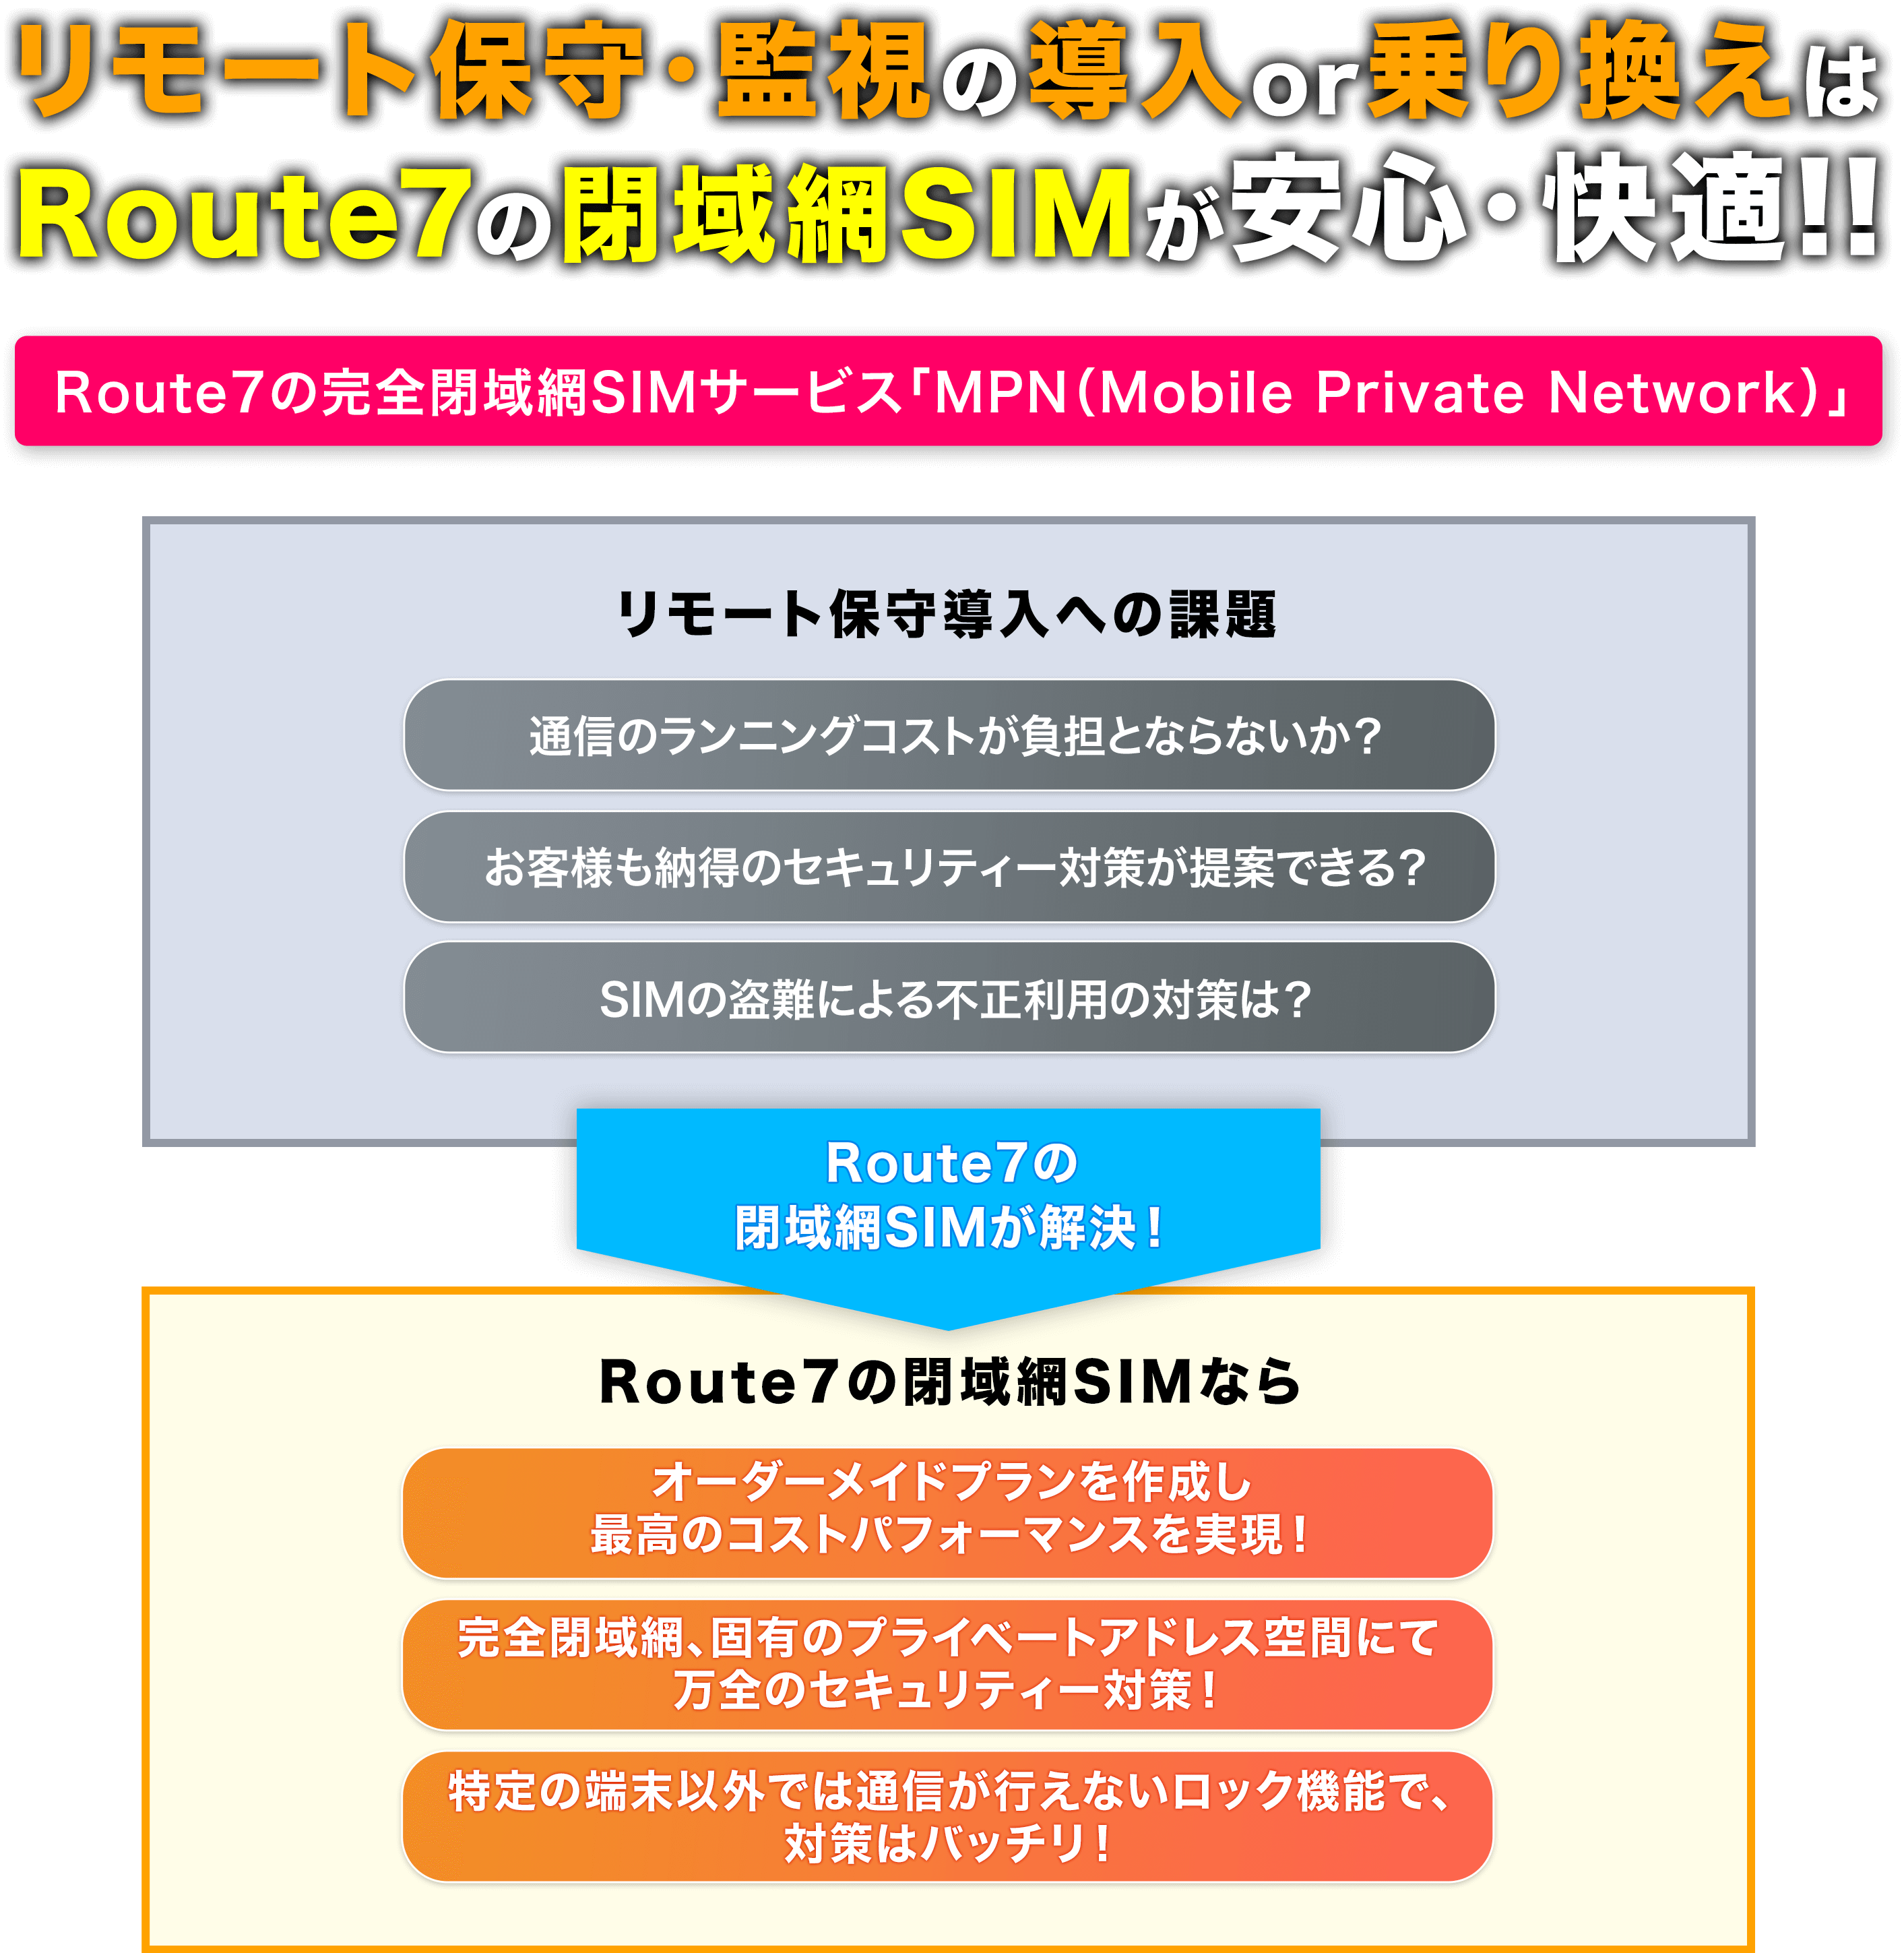 リモート保守・関しの導入or乗り換えは、Route7の「閉域網SIM」が安心・快適！！